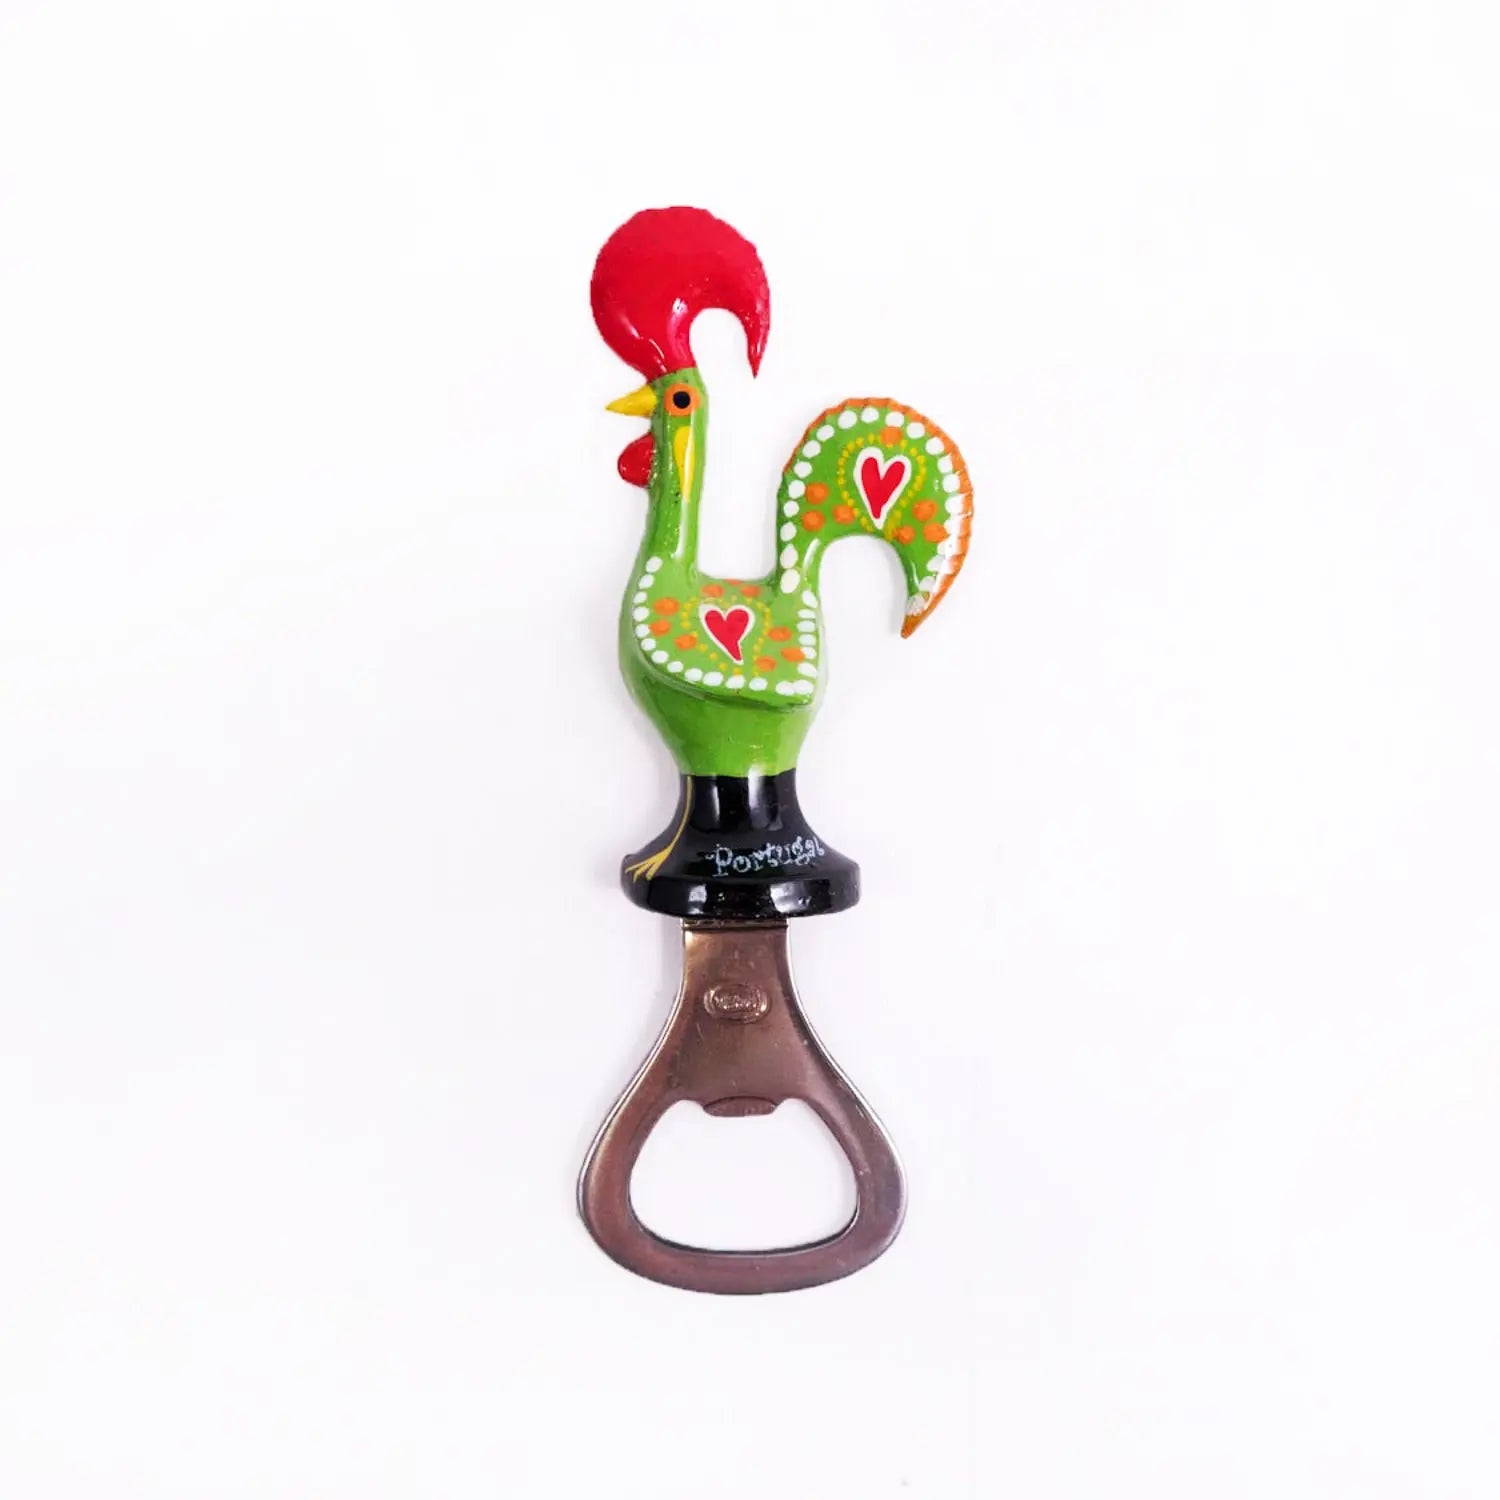 Galo de Barcelos Bottle Opener Magnet 11cm Green-Rooster Camisa 